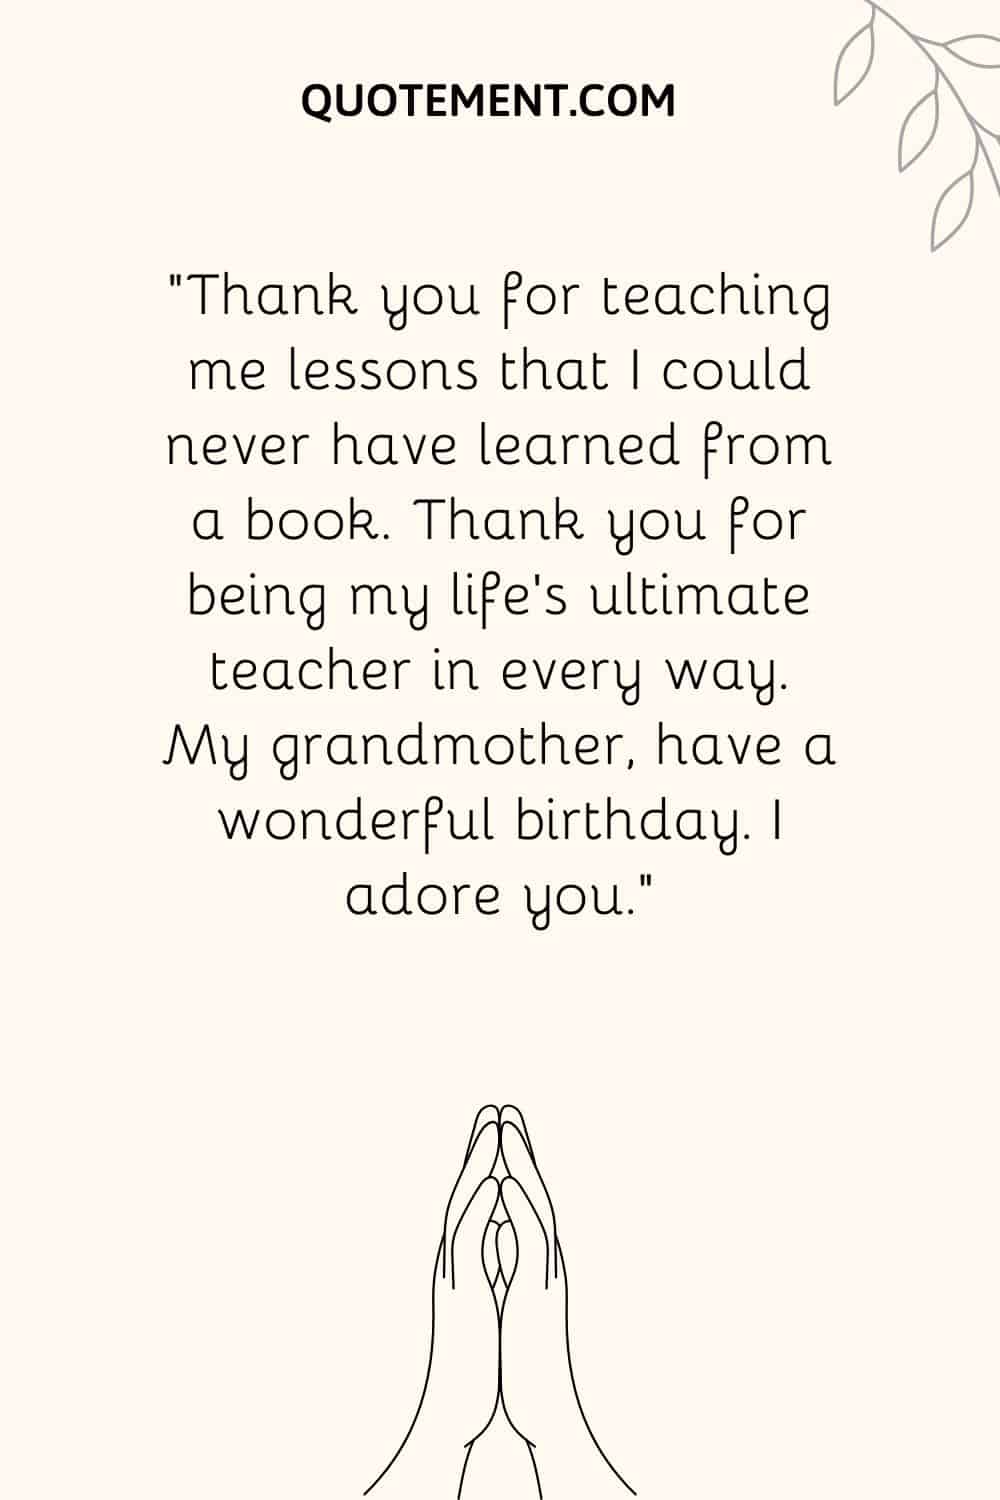 "Gracias por enseñarme lecciones que nunca podría haber aprendido de un libro. Gracias por ser el mejor maestro de mi vida en todos los sentidos.